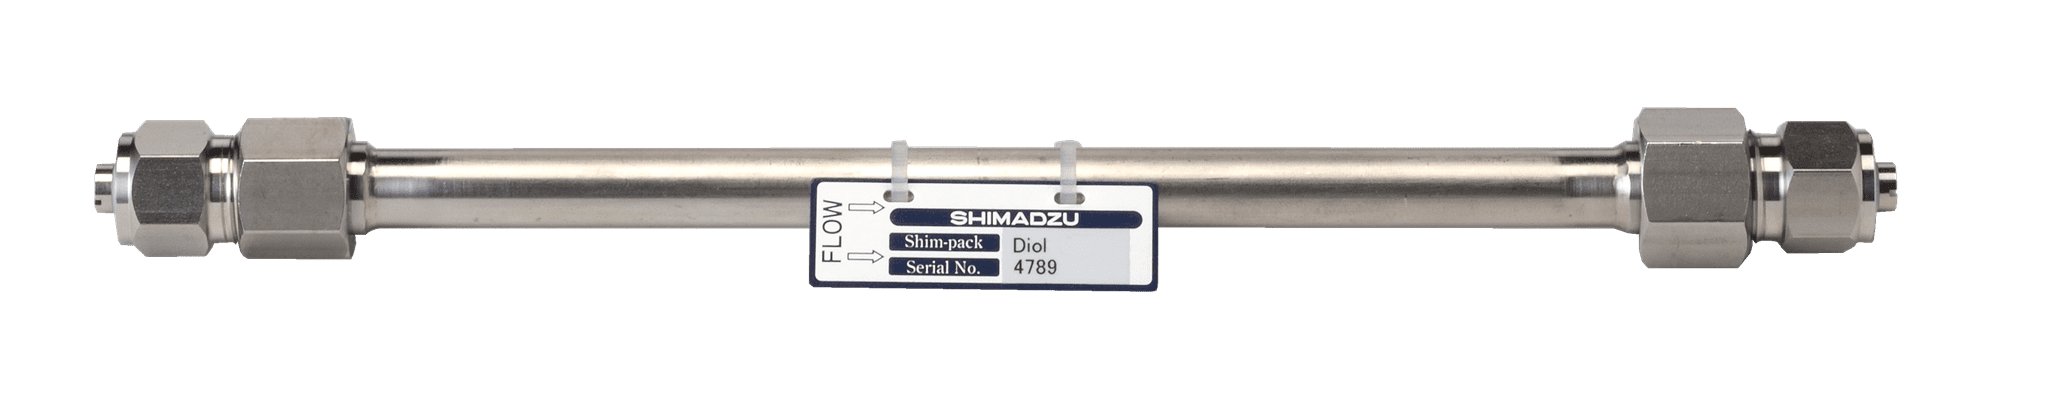 Immagine di Shim-pack Diol-300; 5 µm; 250 x 7.9